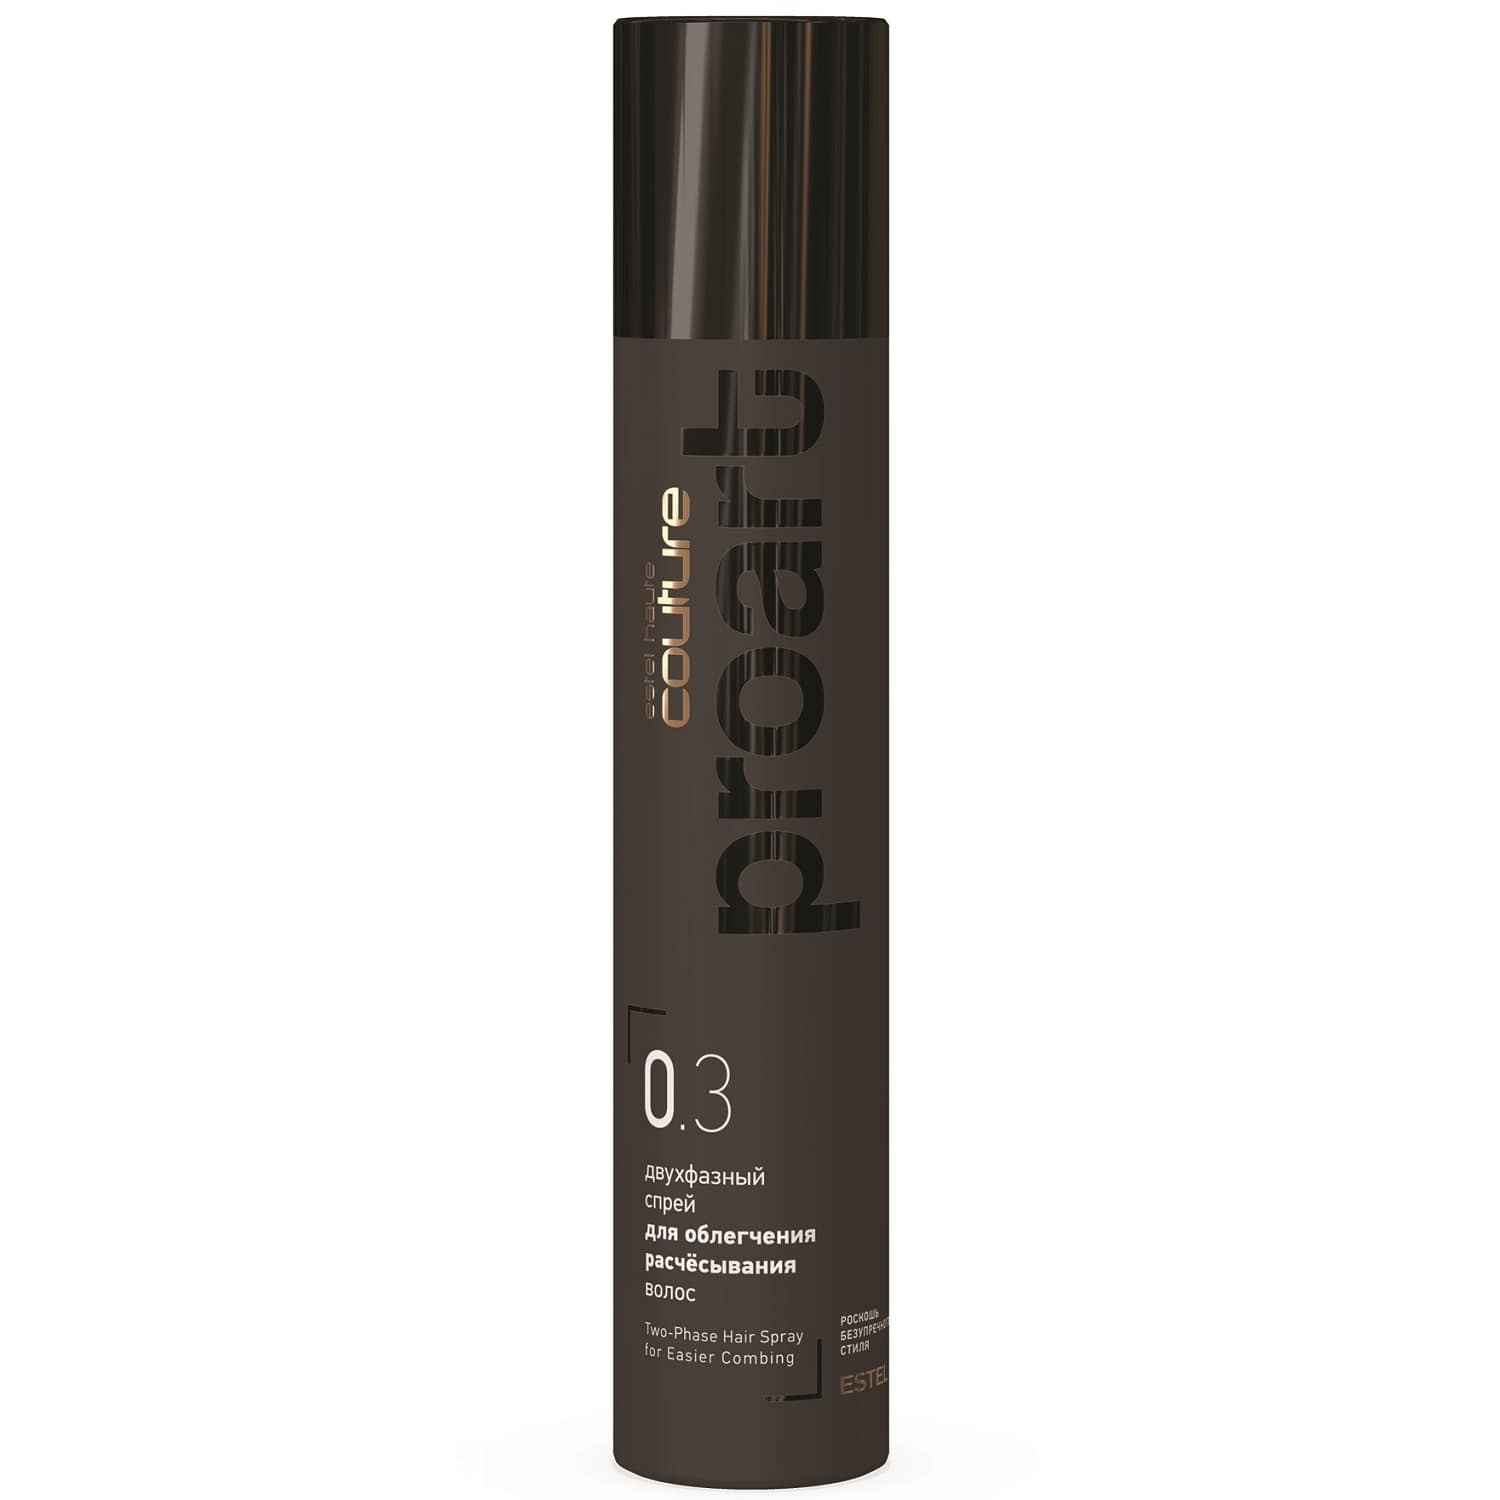 Estel Двухфазный спрей для облегчения расчёсывания волос proArt 0.3, 300 мл (Estel, Haute Couture)